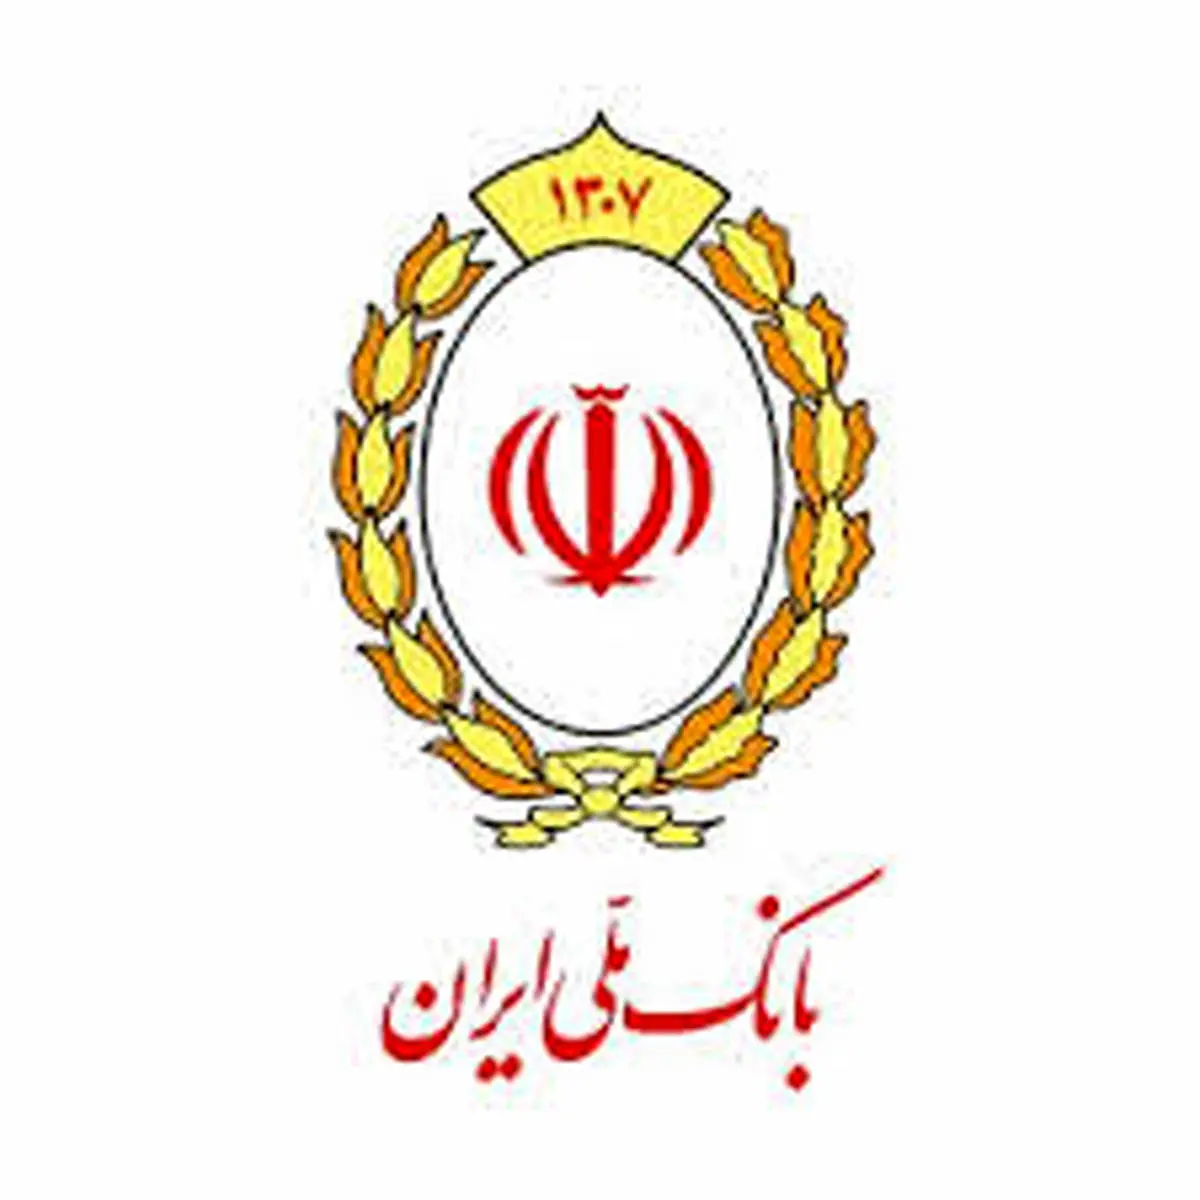 بهره مندی بیش از 10 میلیون نفر از تسهیلات قرض الحسنه بانک ملی ایران طی یک دهه اخیر